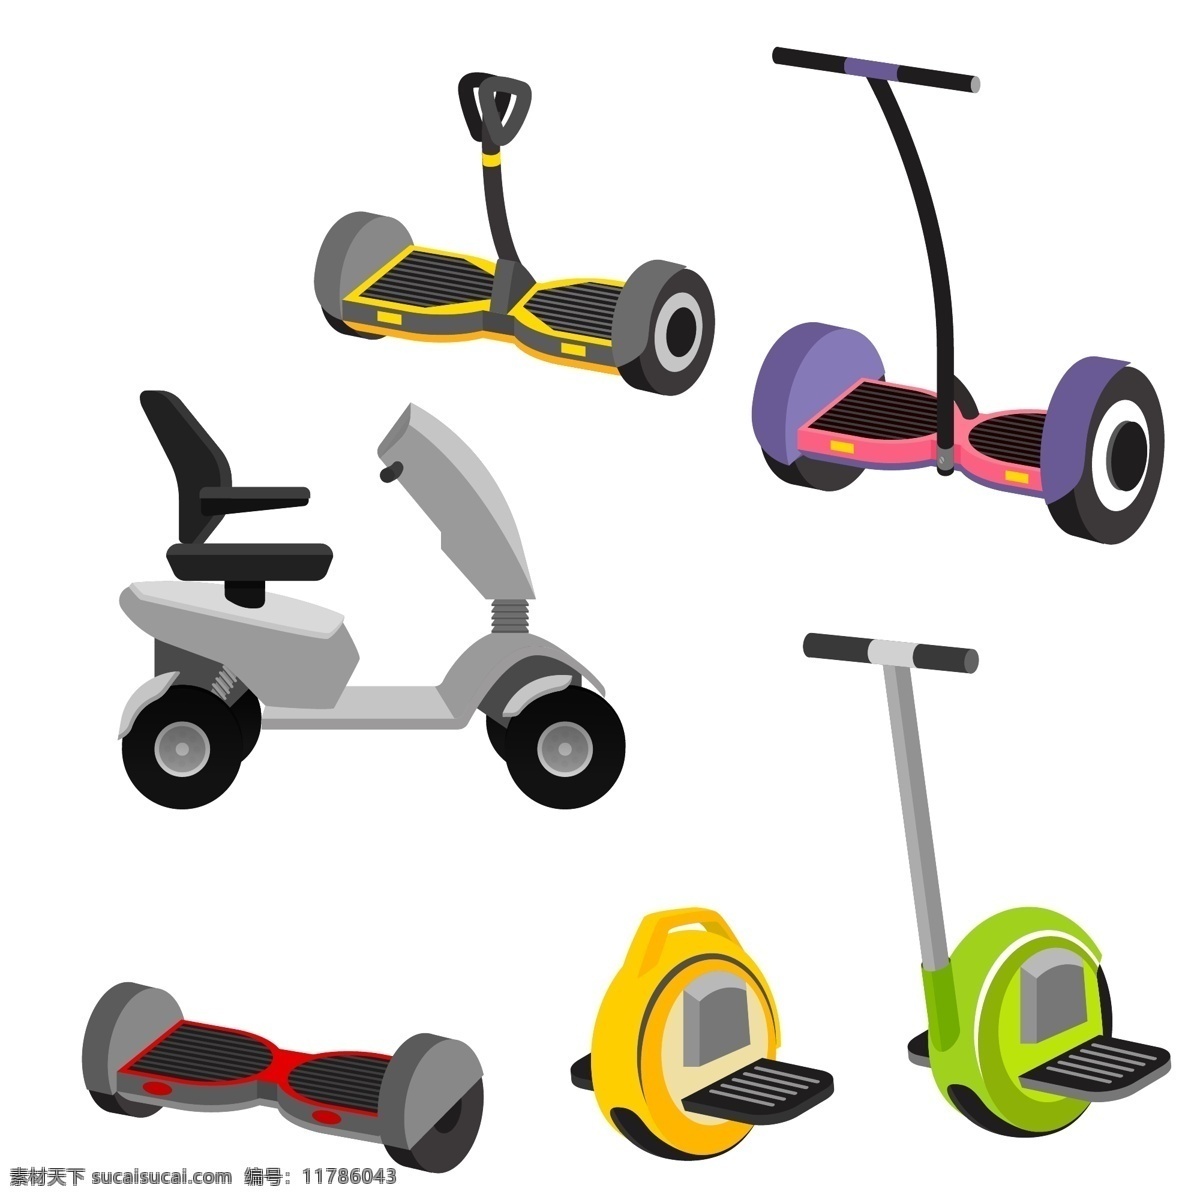 创意 卡通 电动车 彩色 矢量素材 平衡车 老人代步车 设计素材